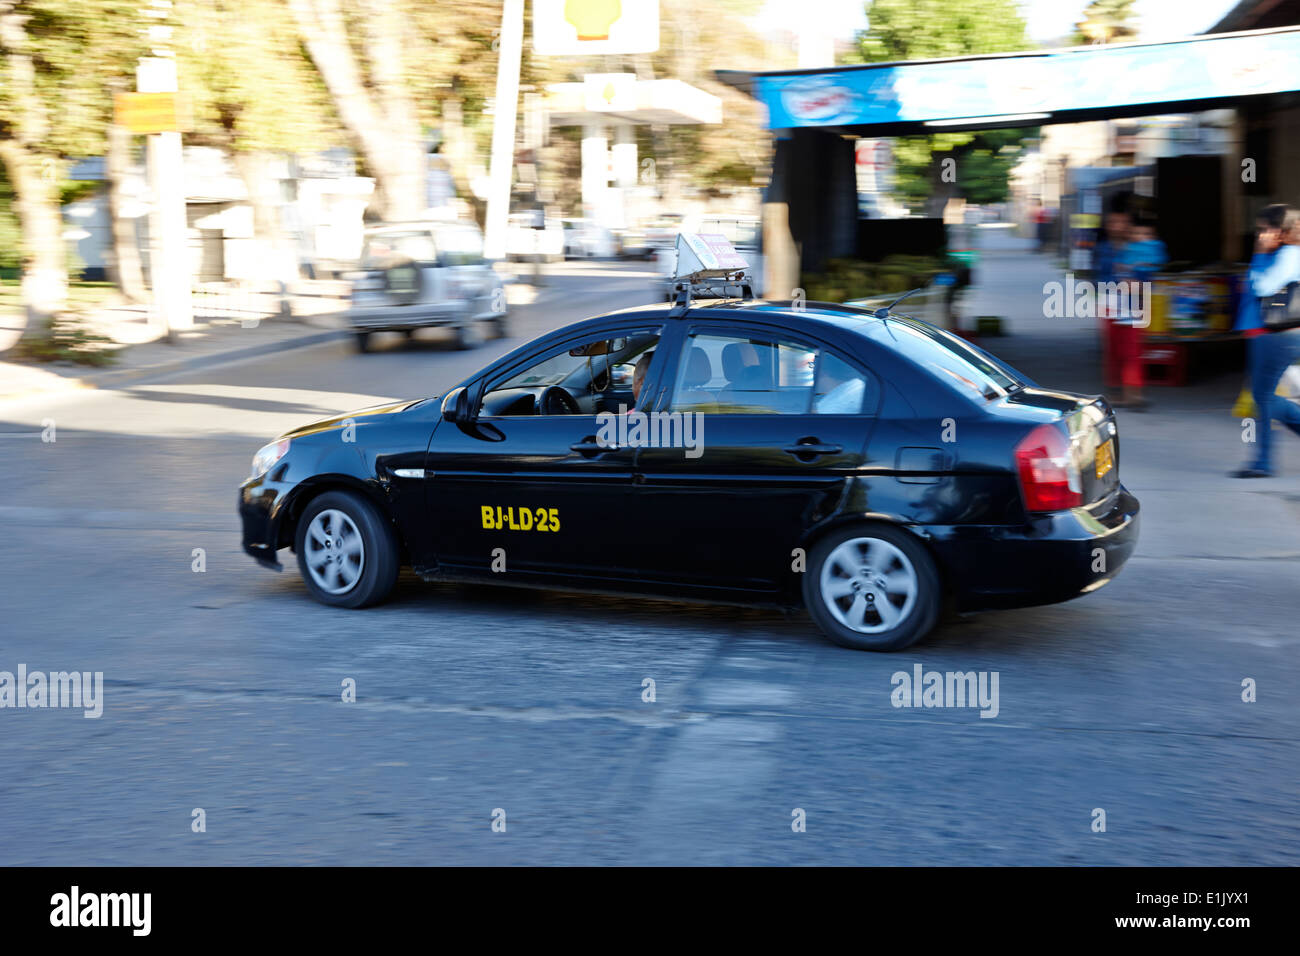 Colectivos taxi cab le centre-ville de constitucion chili Banque D'Images